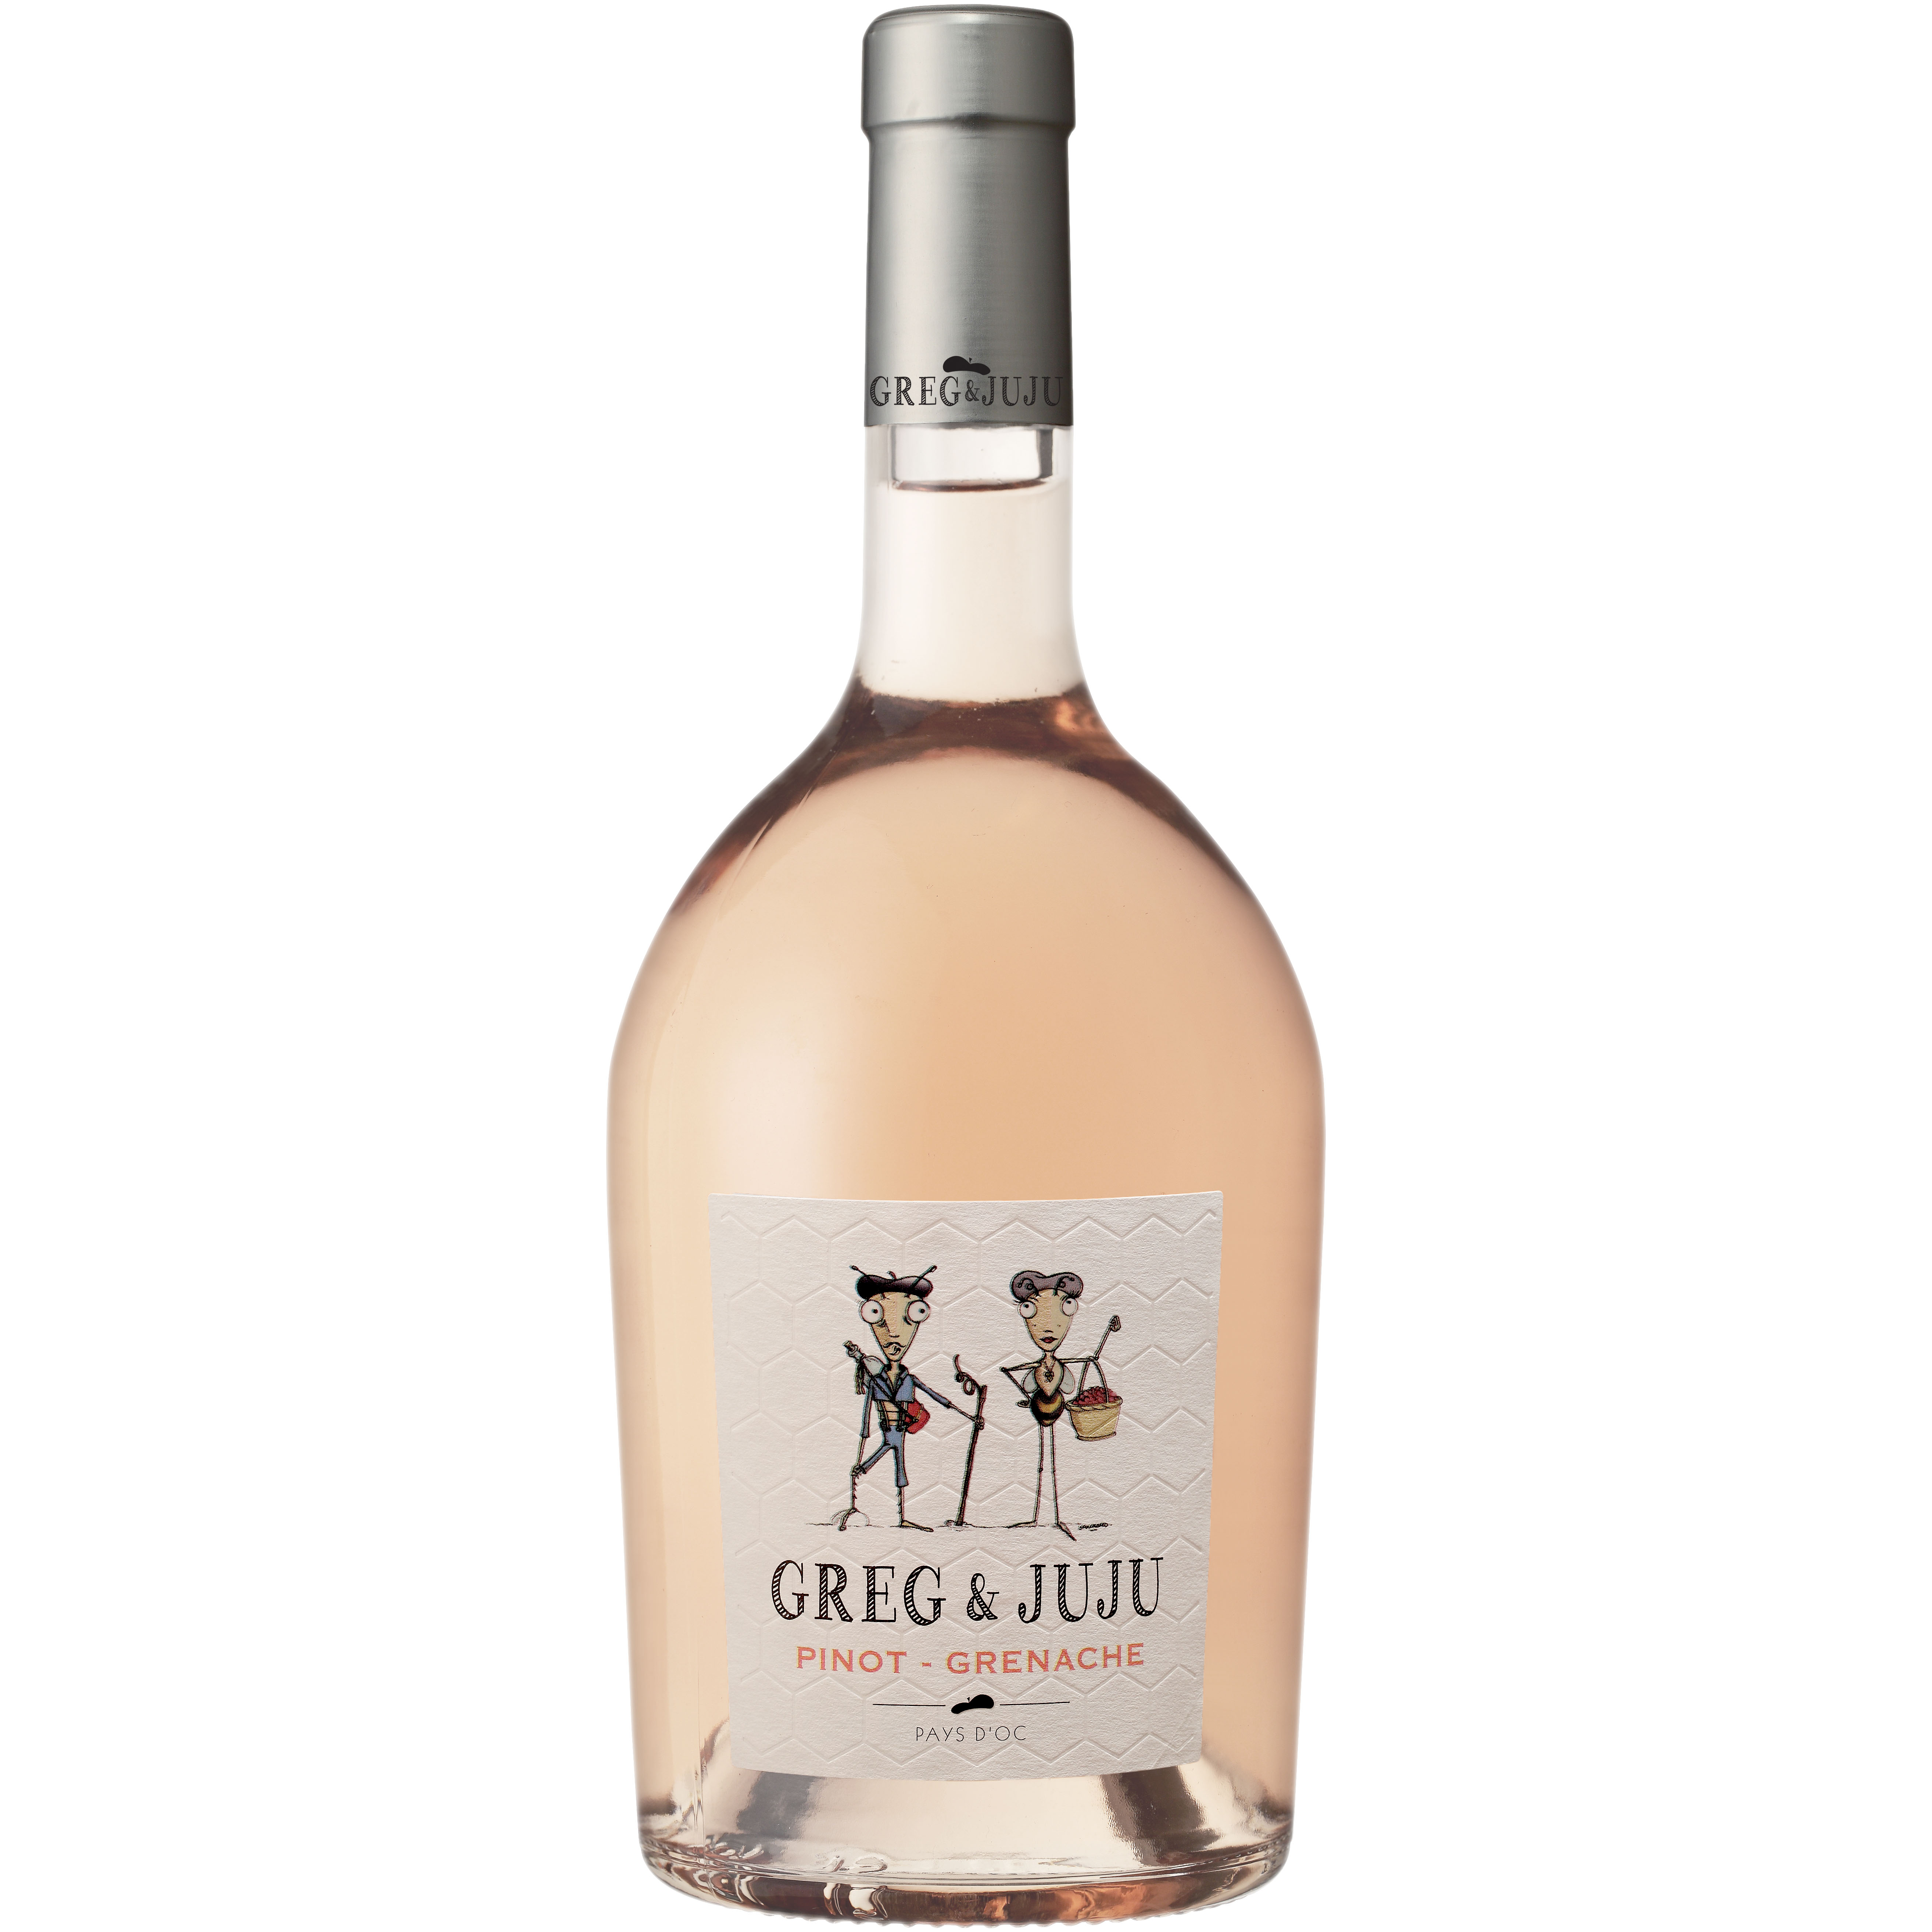 Greg & Juju Pinot-Grenache Rosé – Weinladen IGP d ´Oc Mannheim Pays